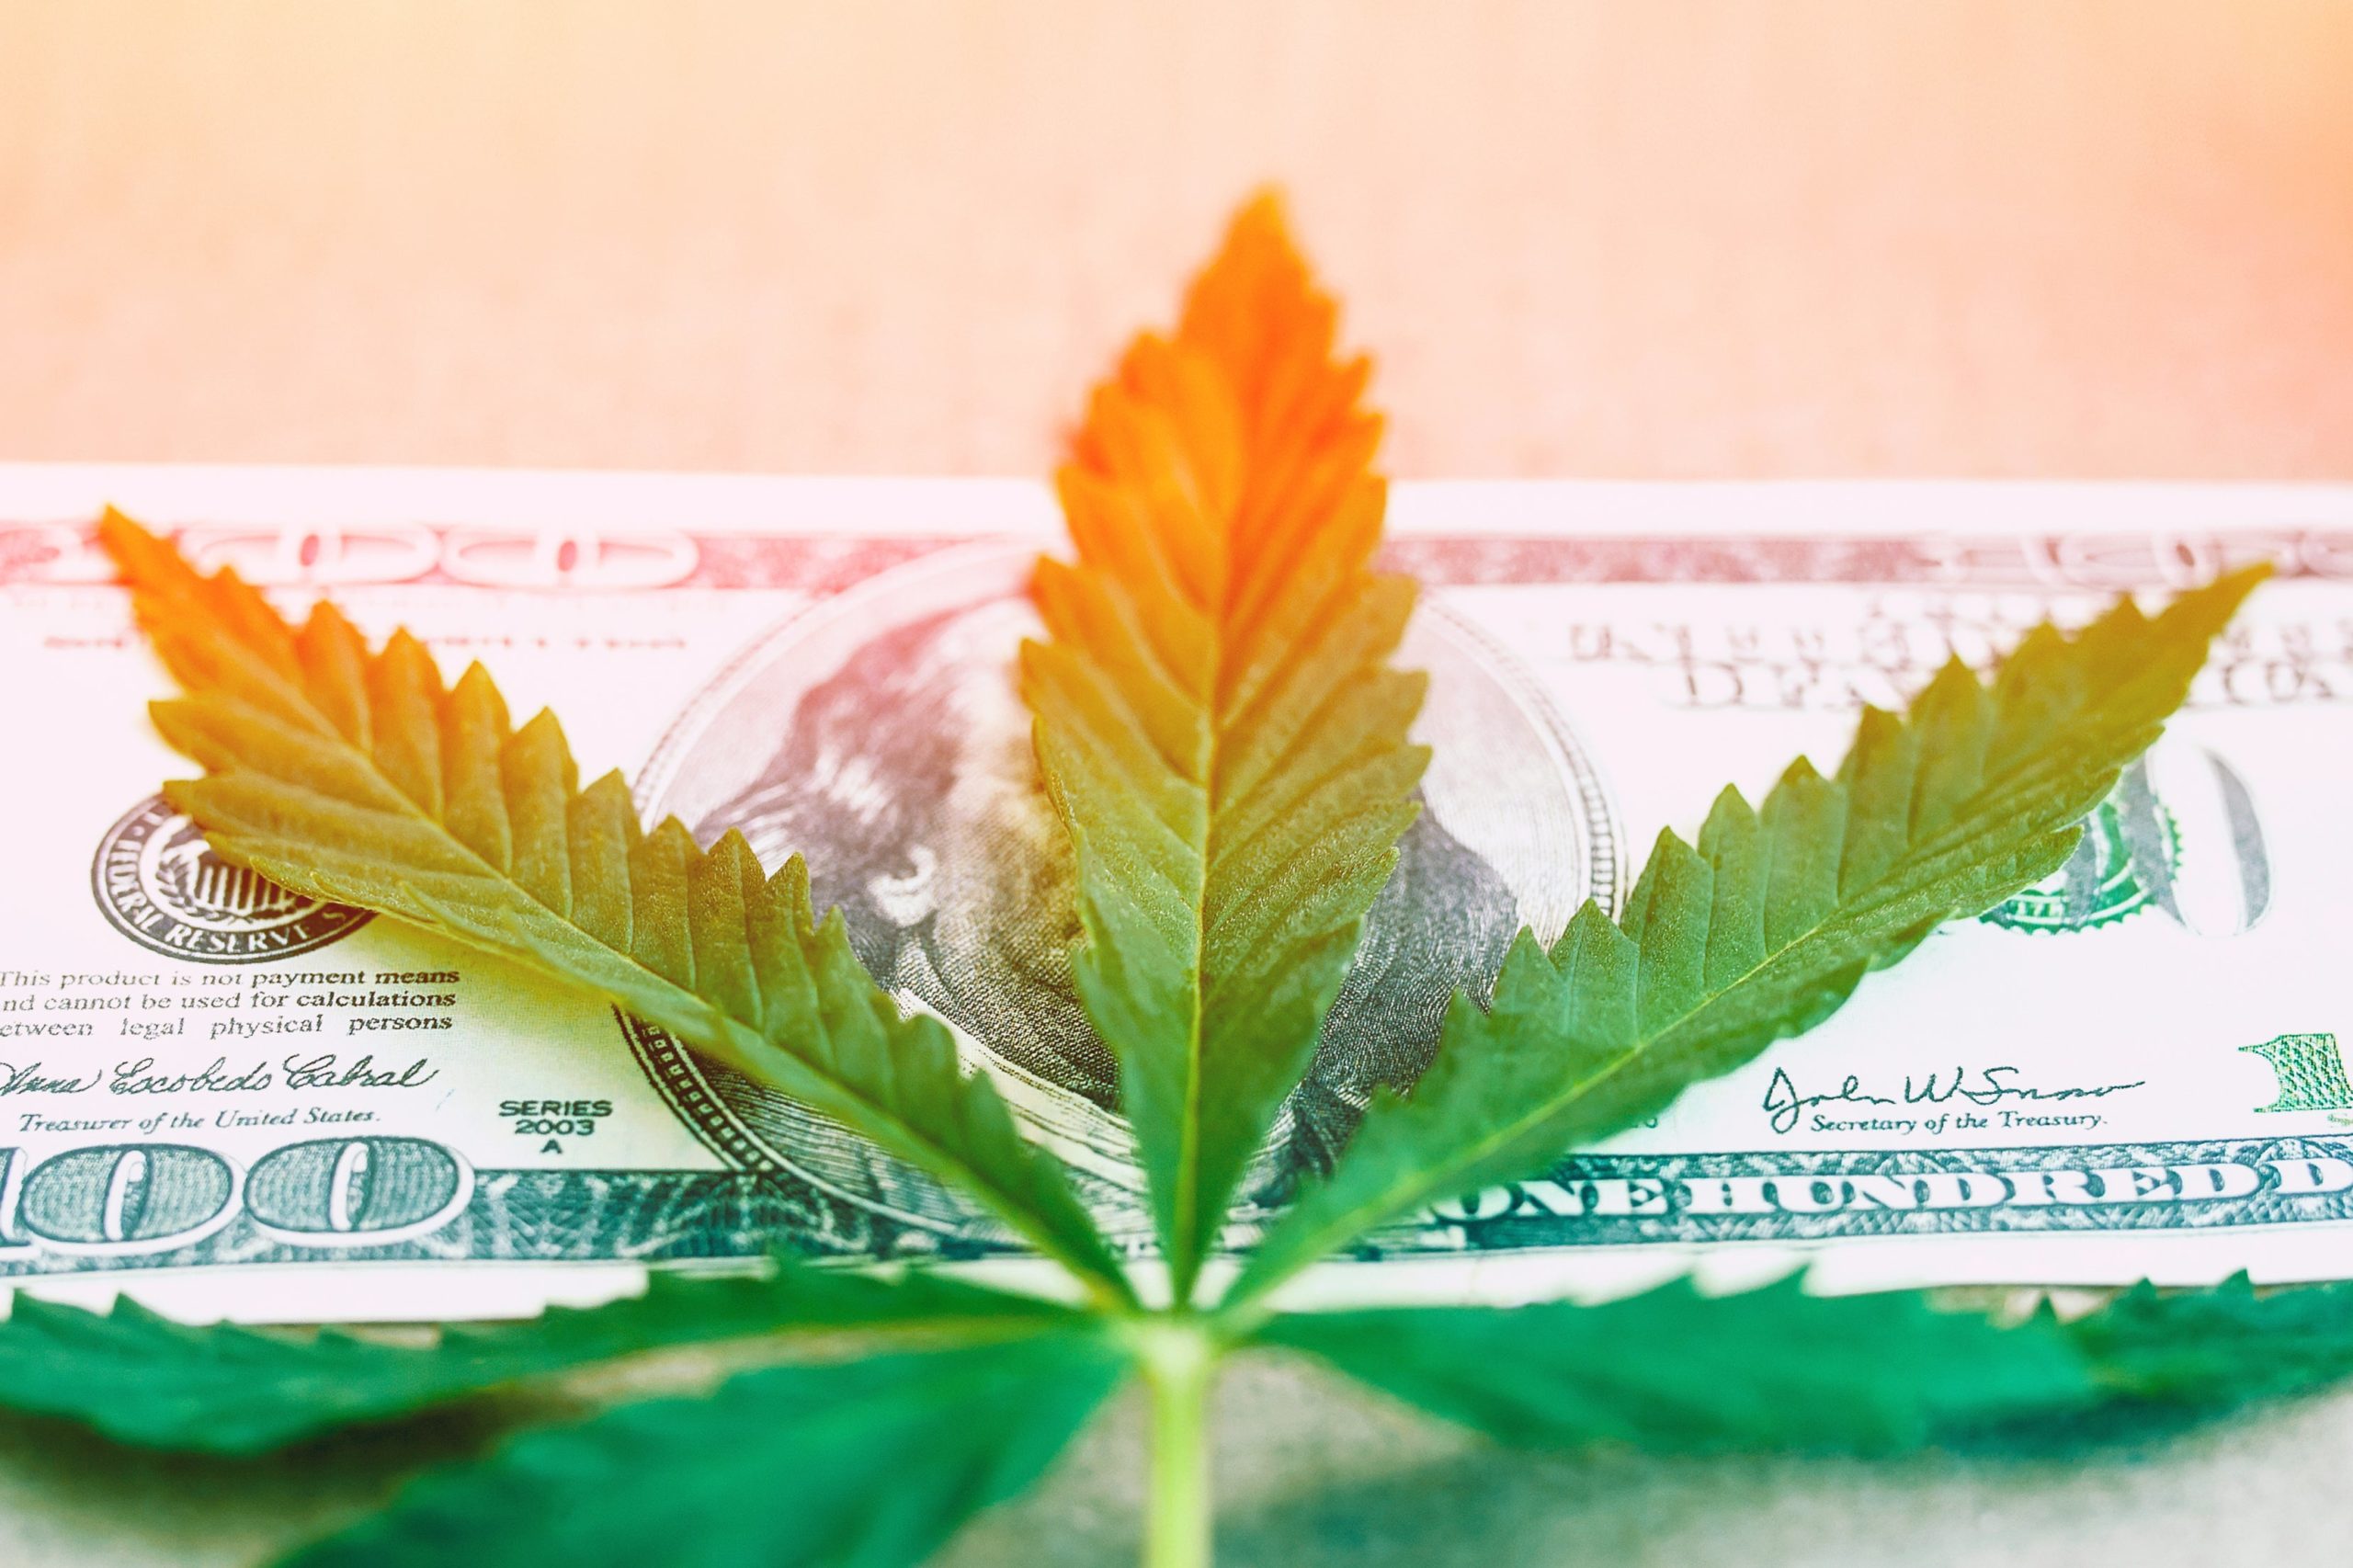 Osta Kannabis Osakkeet 2021 [Luettelo Hyvistä Osakkeista]